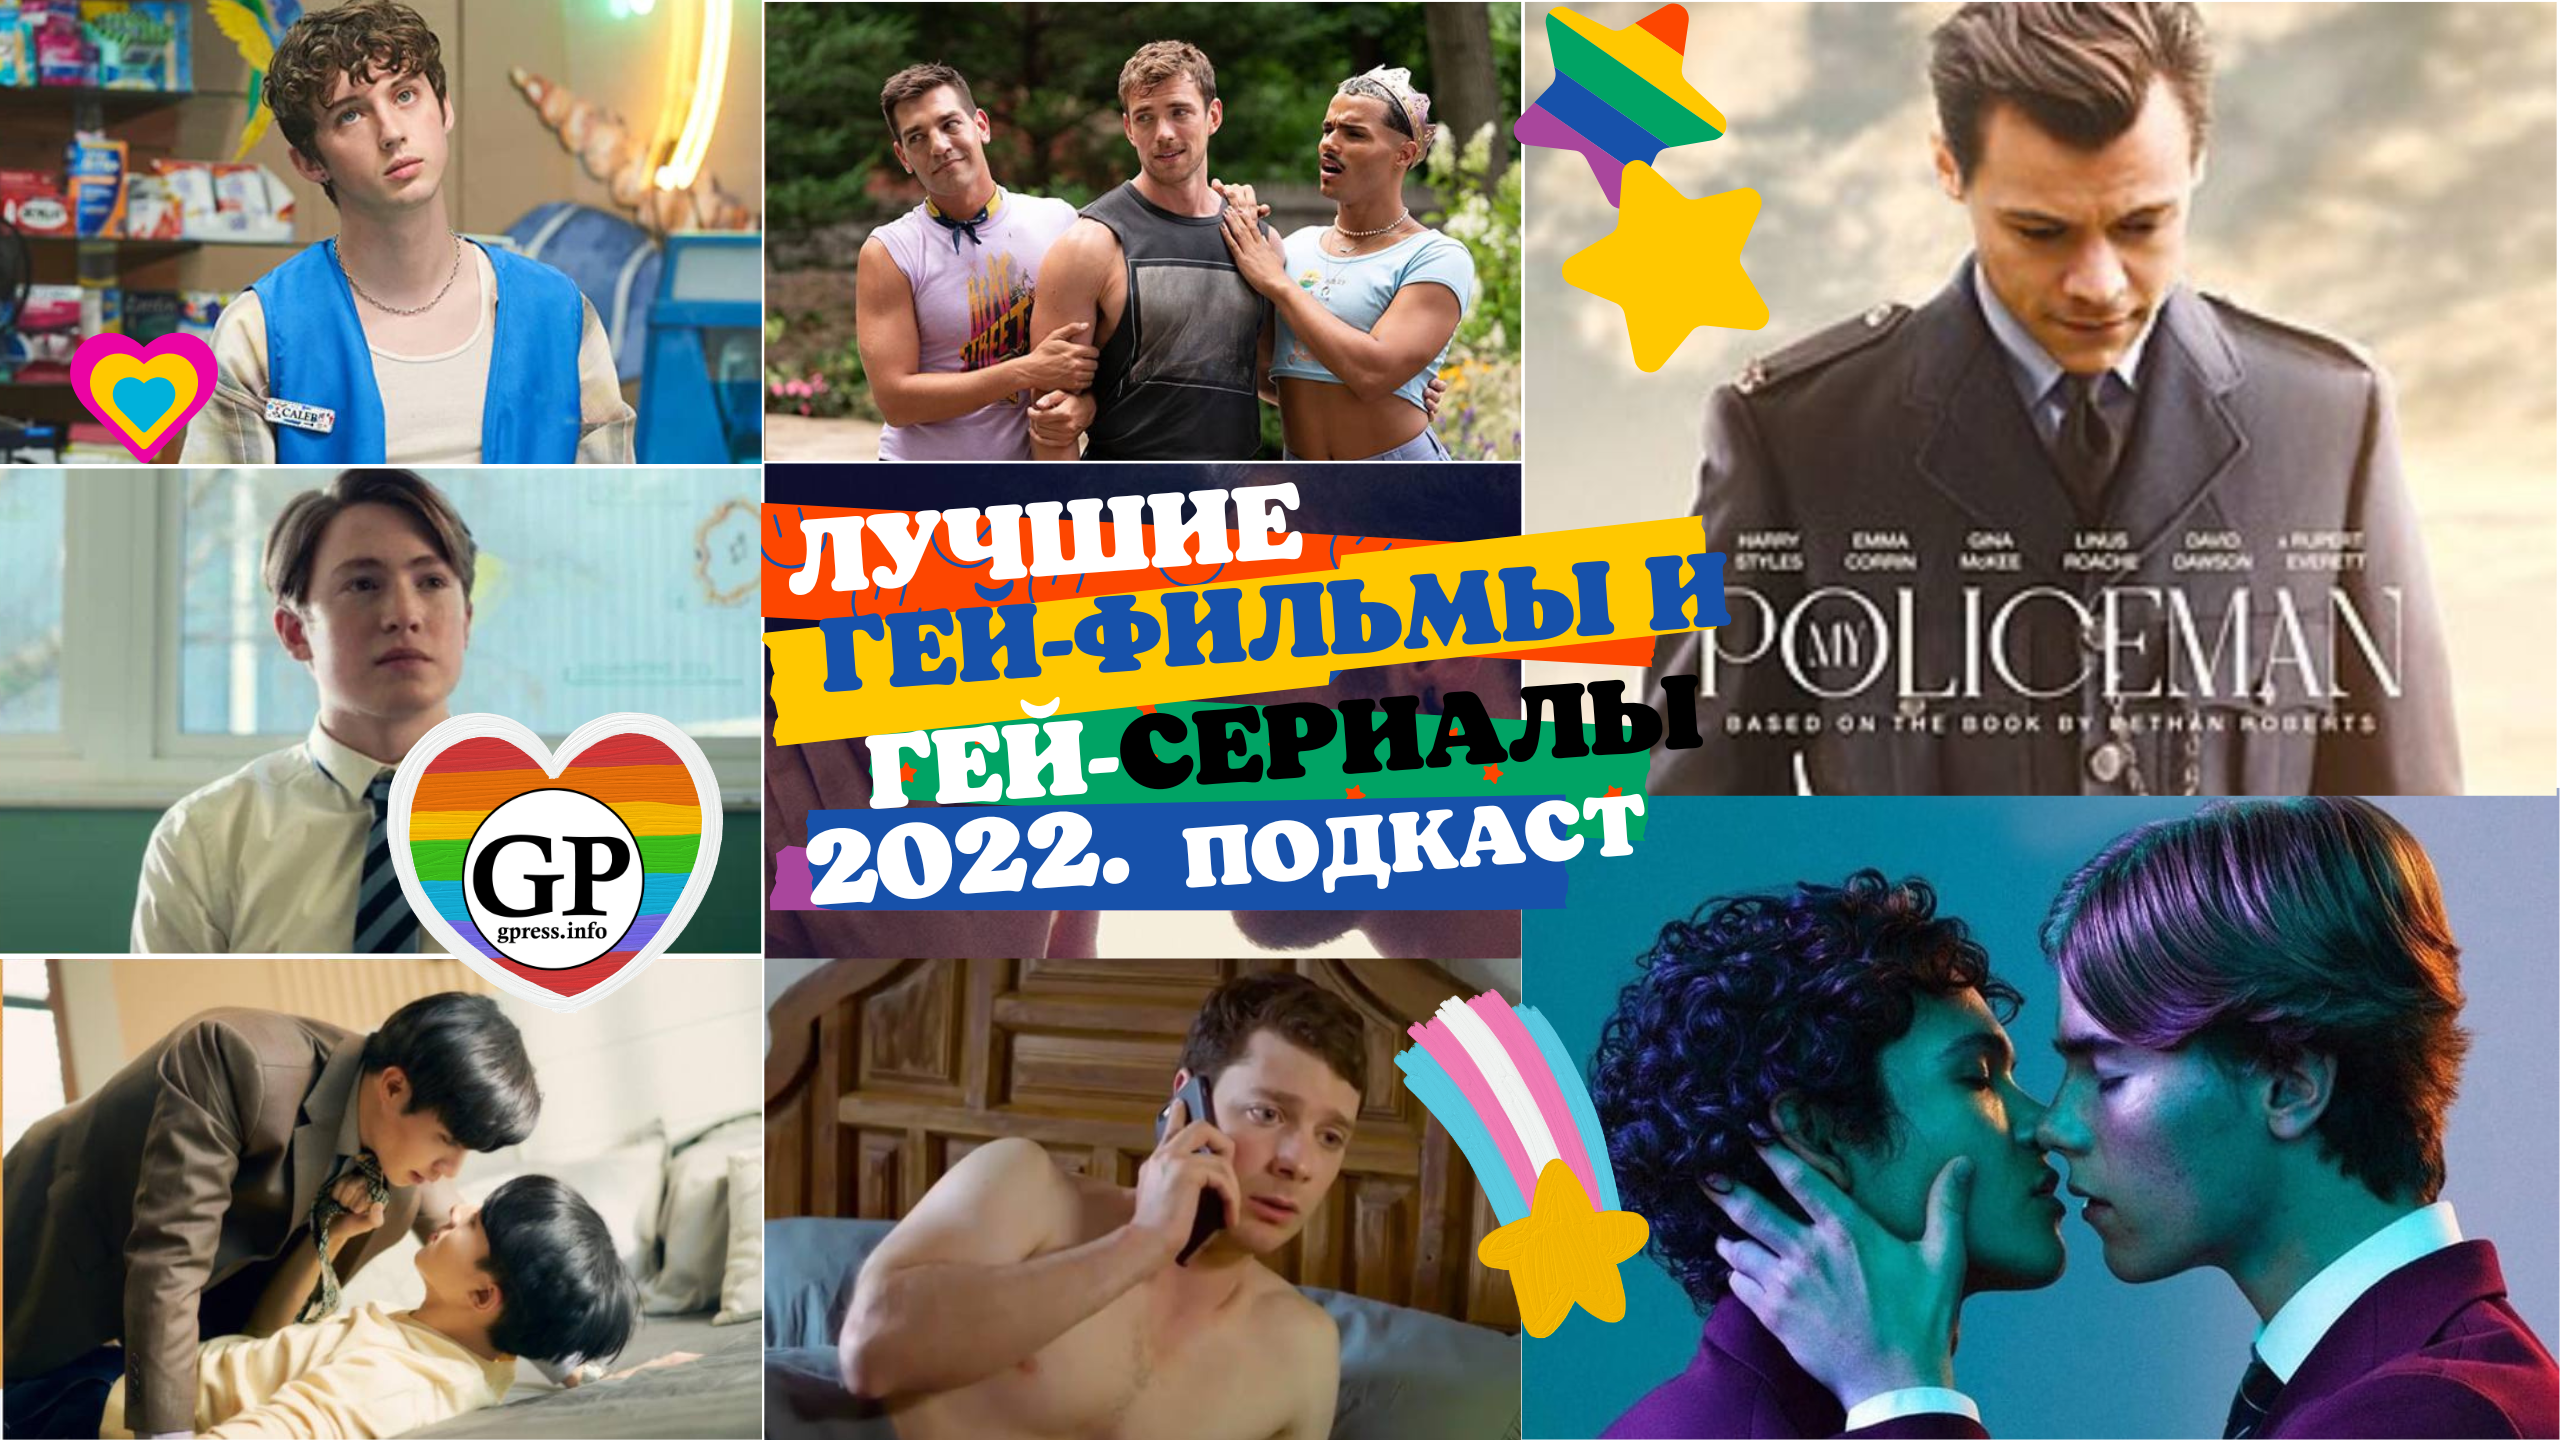 Лучшие гей-фильмы, гей-сериалы 2022 со ссылками. Подкаст